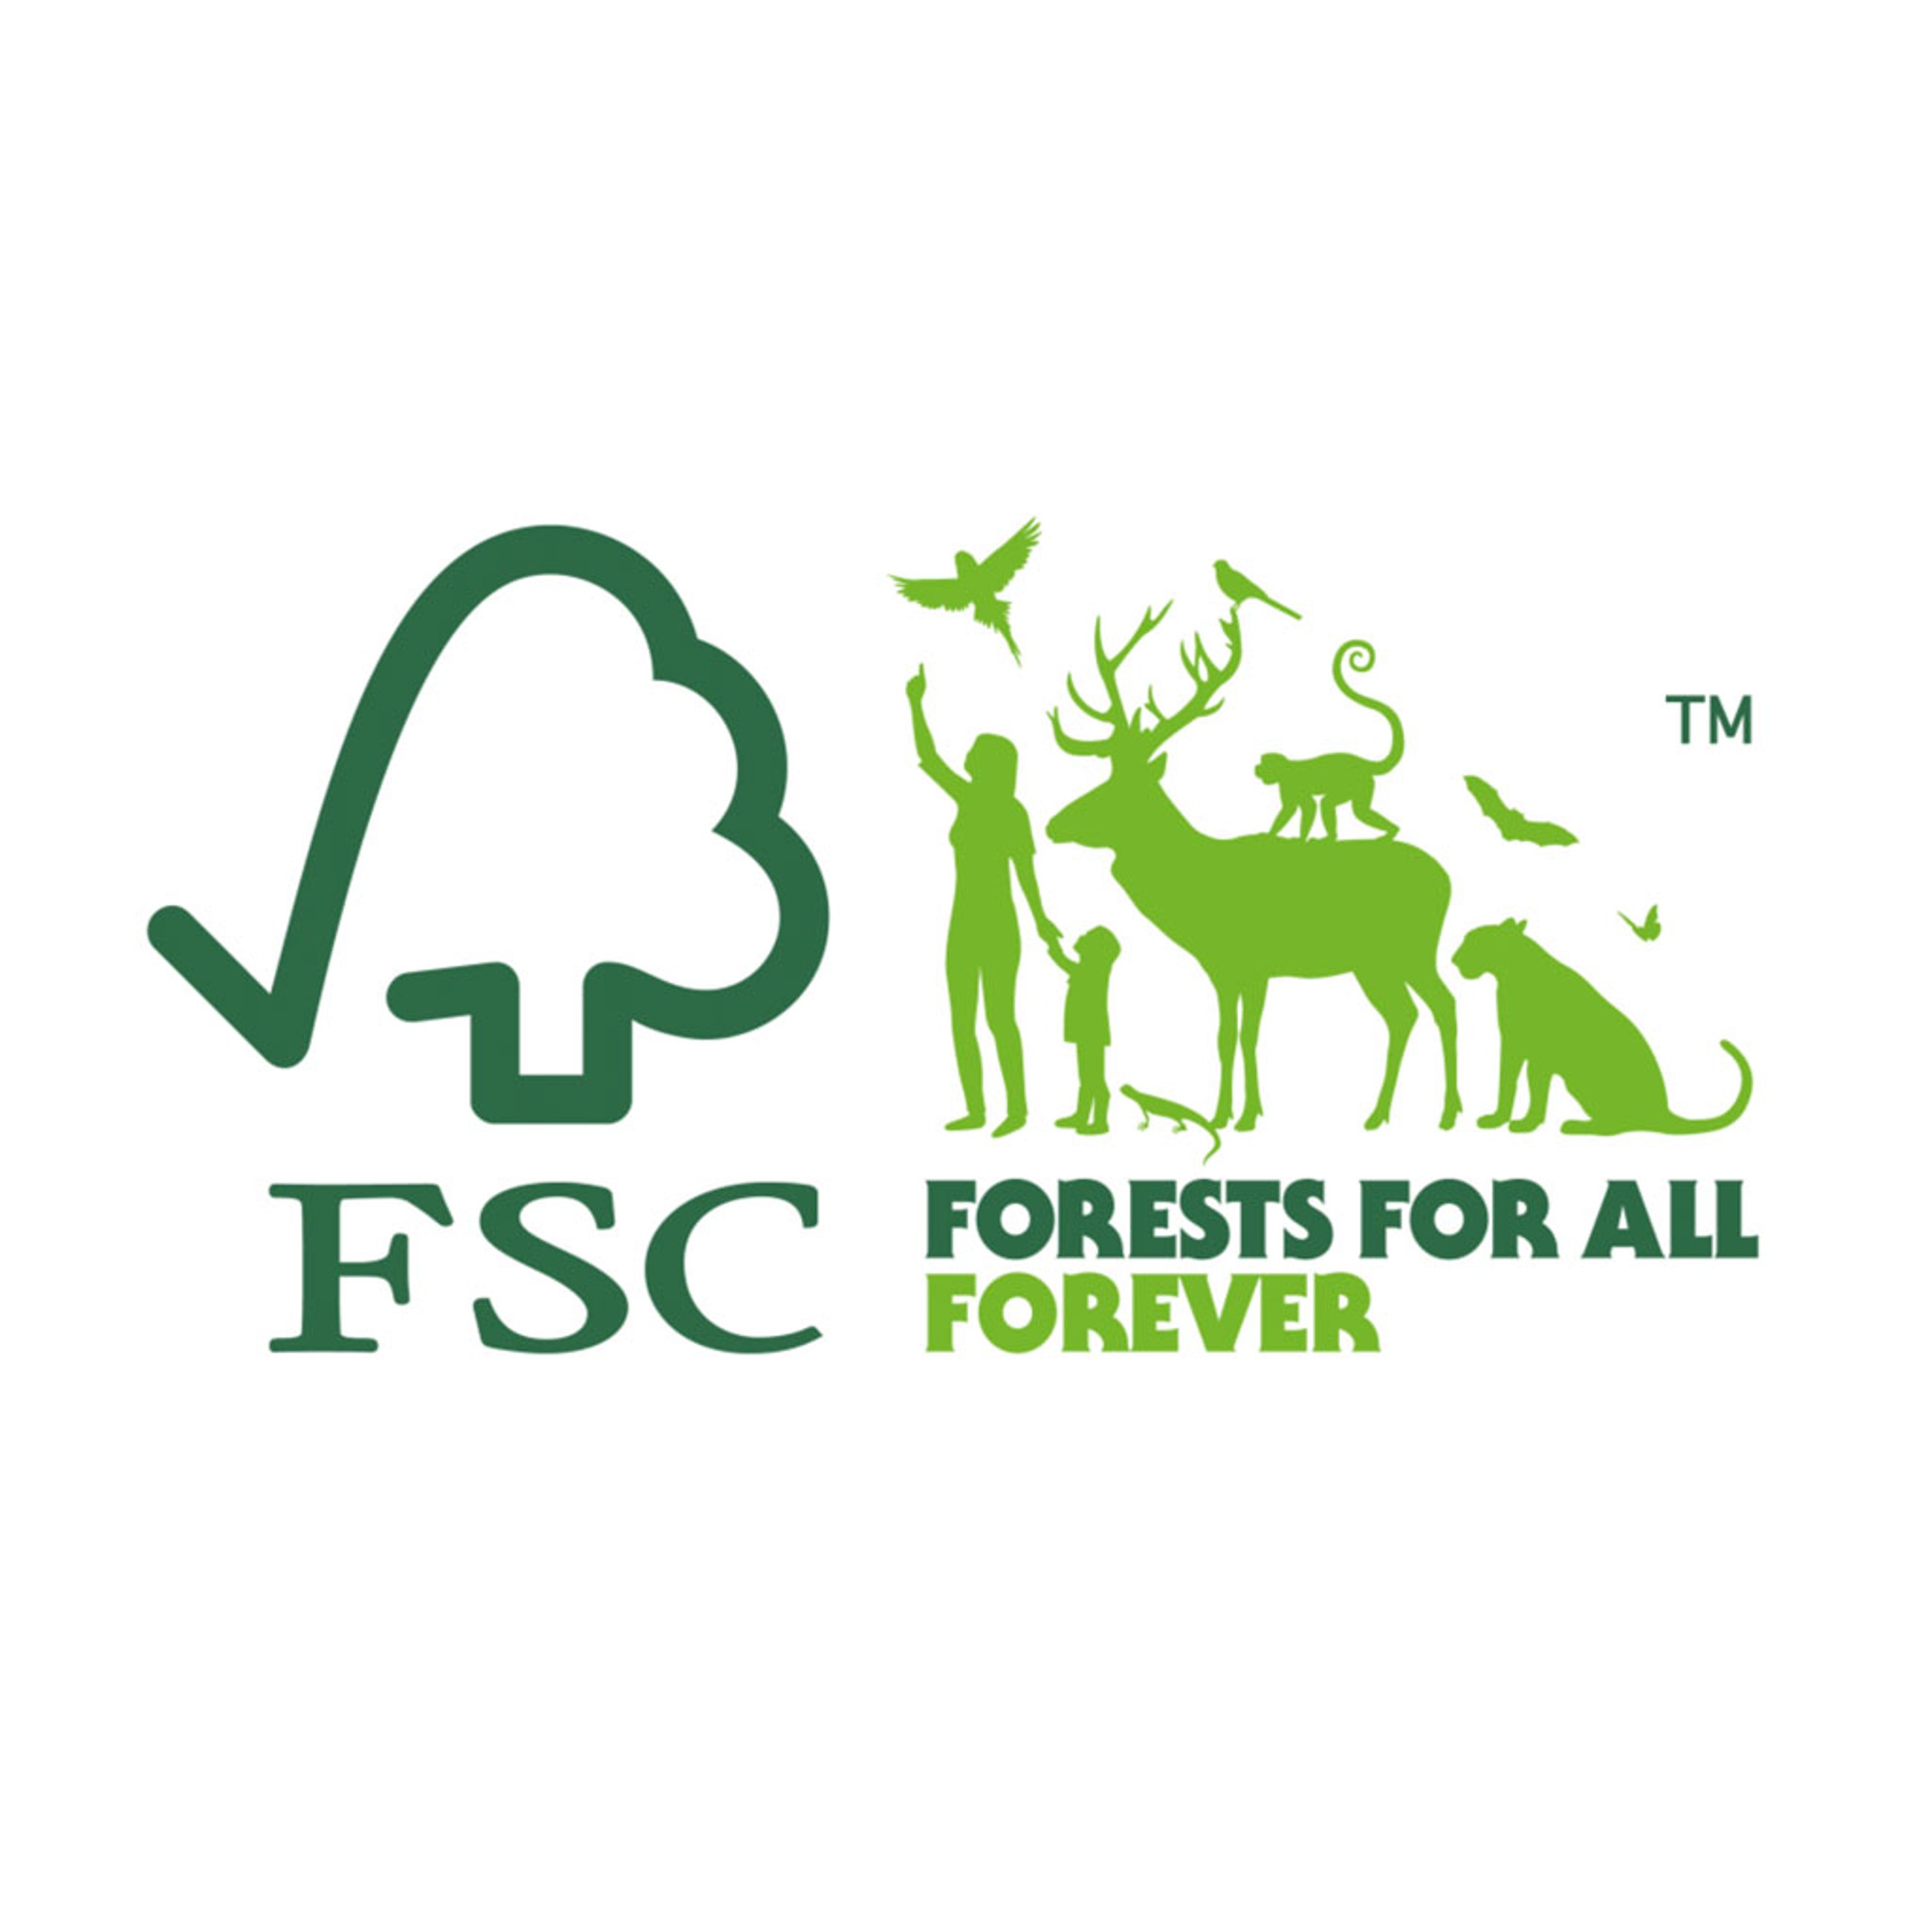 Meble ogrodowe Matera posiadają oficjalny certyfikat FSC